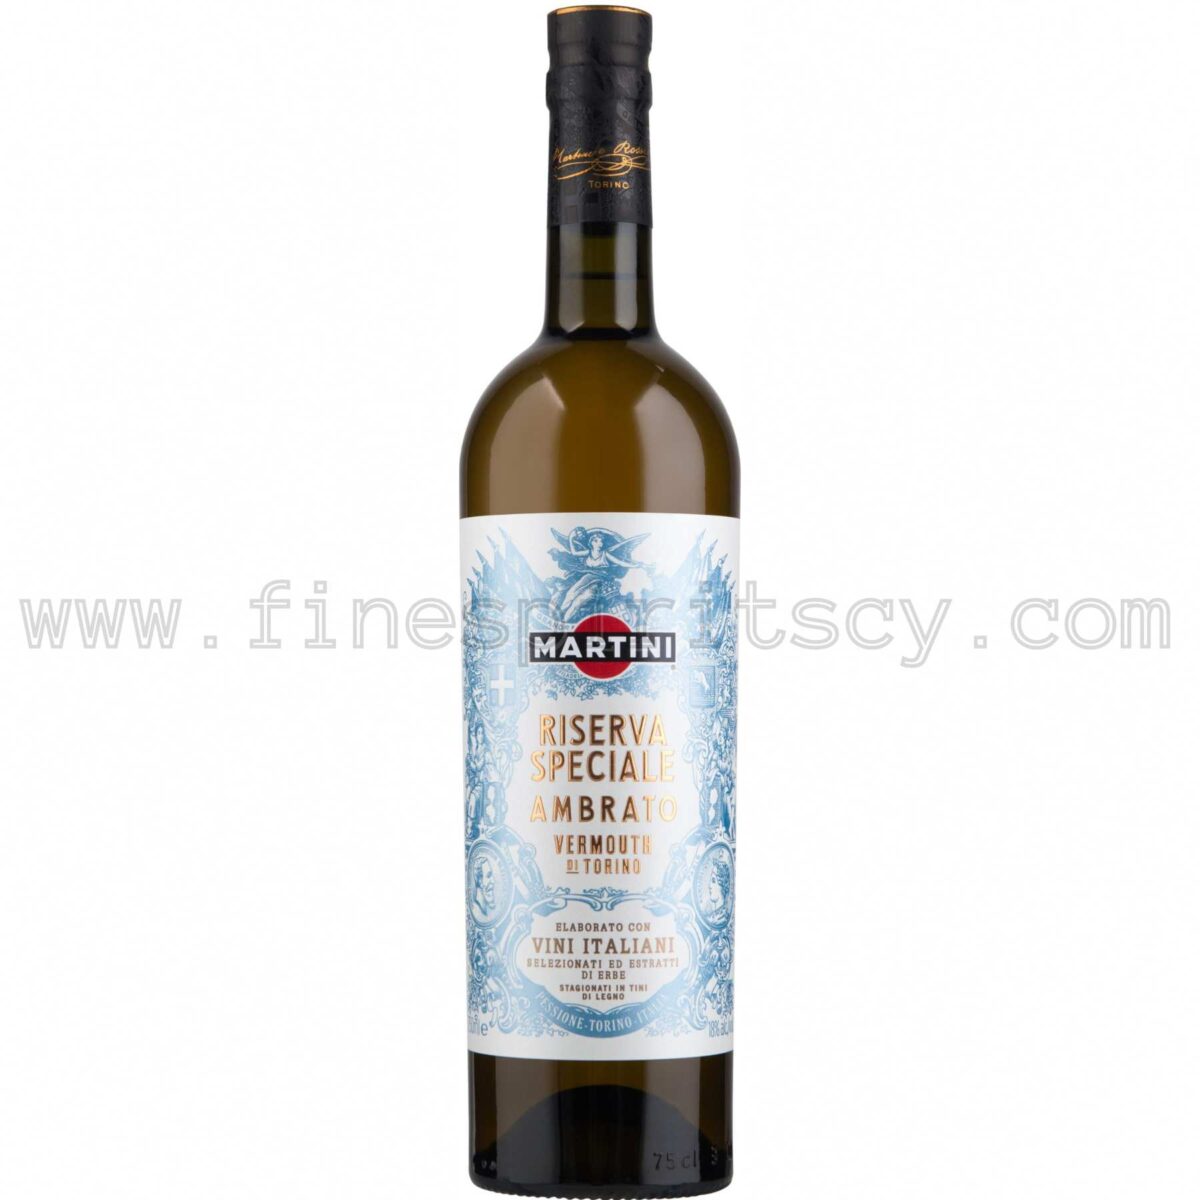 Martini Ambrato Riserva Speciale Vermouth Cyprus Price Order Buy Shop 75cl